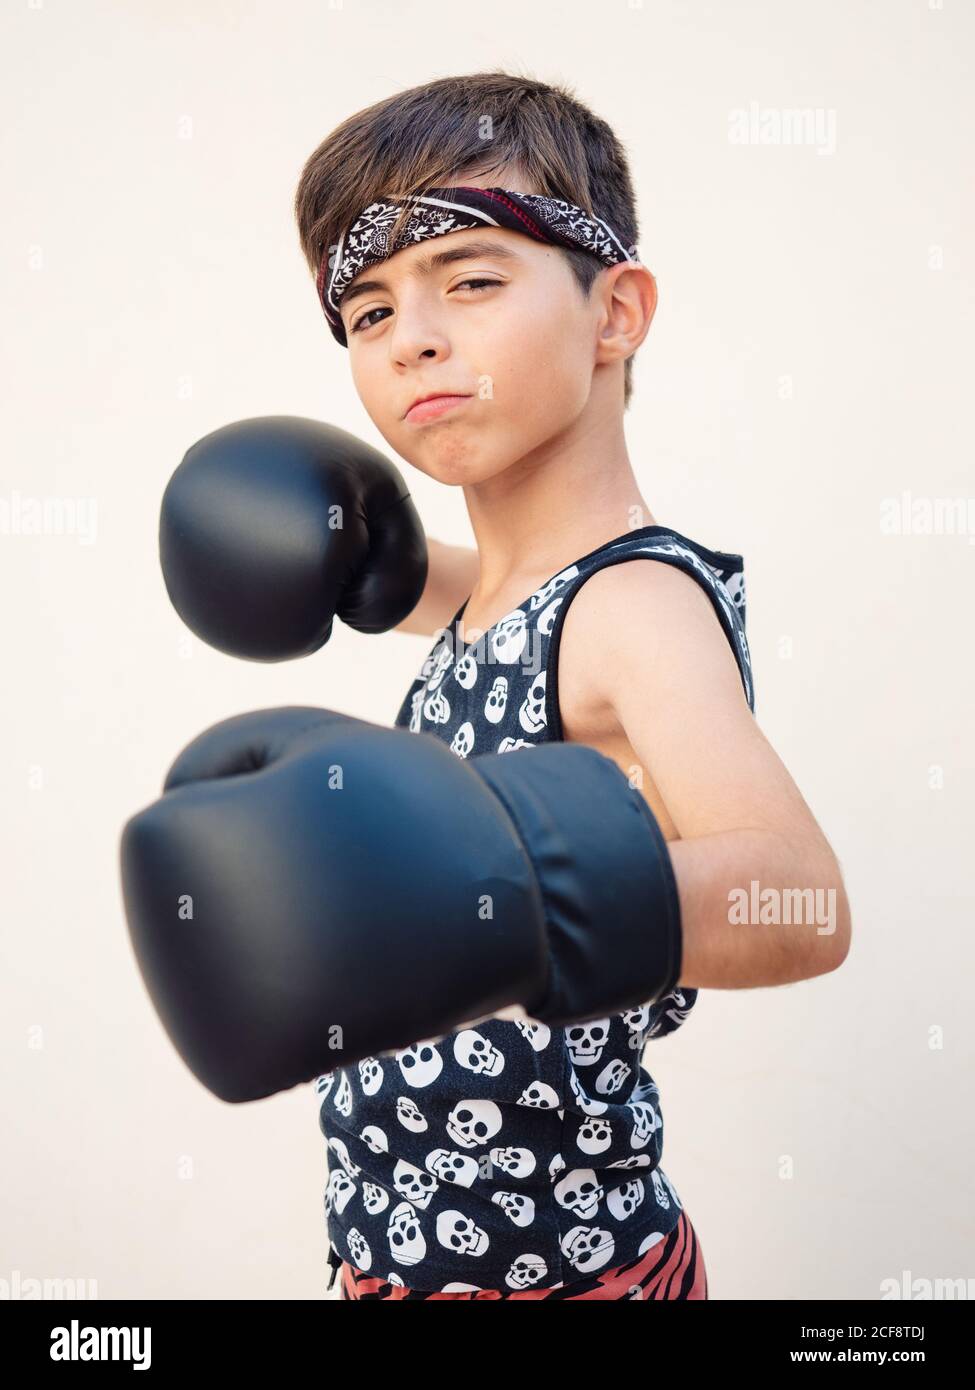 Ernst konzentriert Jungen in schwarzen Boxhandschuhe schlagen Punch an Kamera Stockfoto